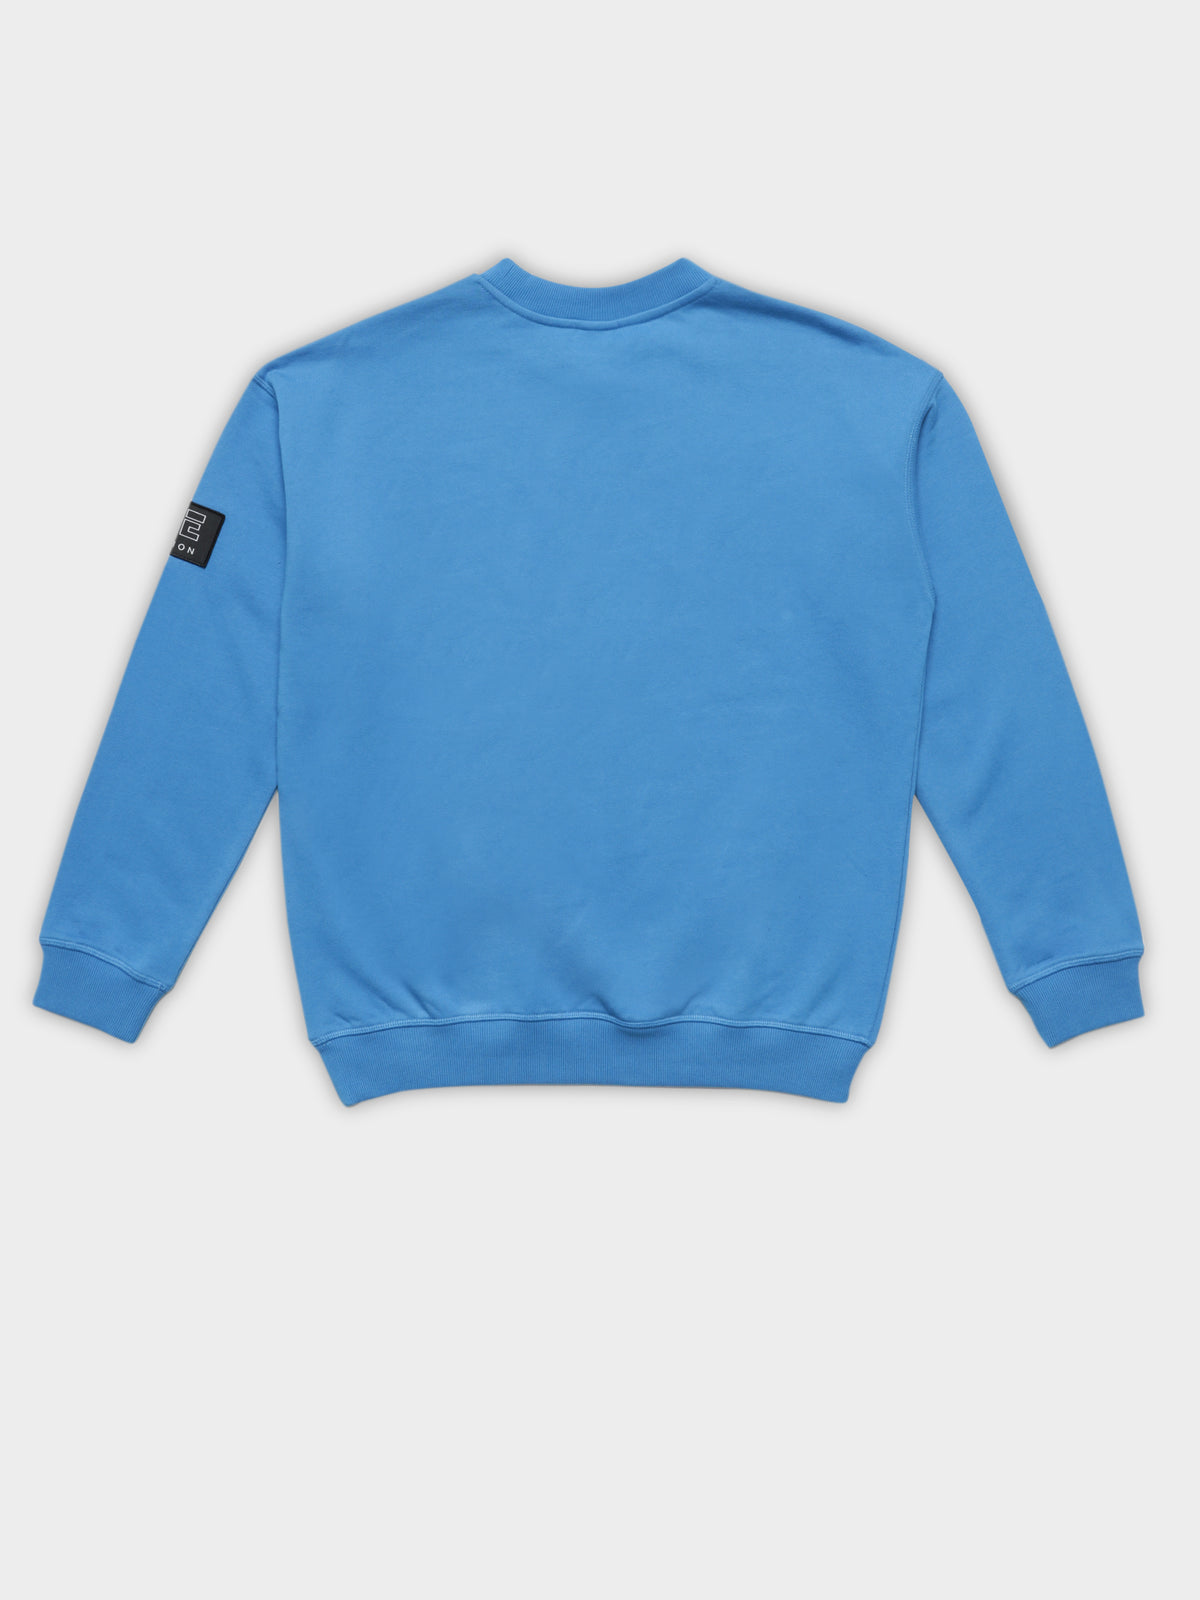 Heads Up Sweatshirt in Bright Blue